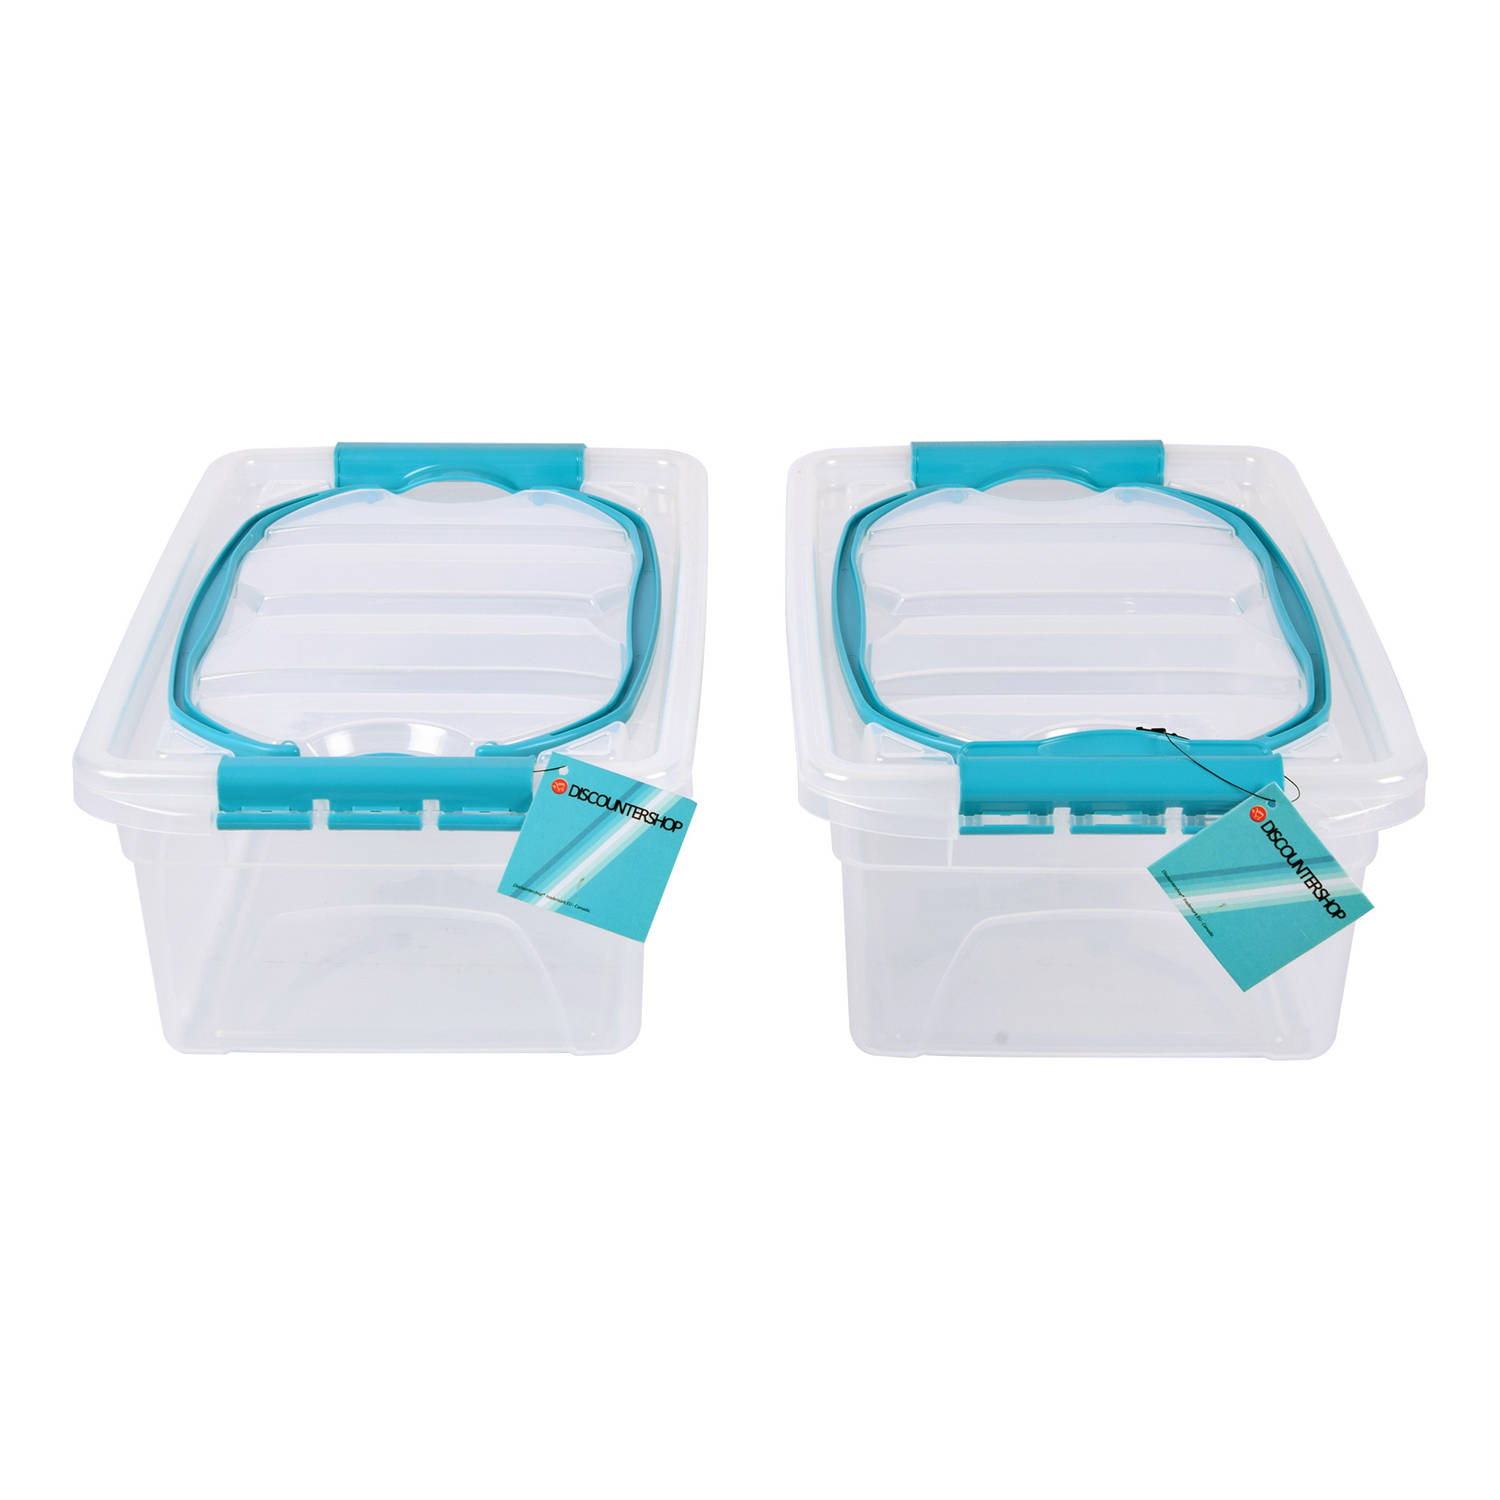 Set van 2 Opbergbox met Deksel Transparant 5 Liter - Sky Blauw Handvat - Kunststof - 30x20.5x12.5cm - Lichtgewicht - Opbergruimte Voor Diverse Huishoudelijke Spullen